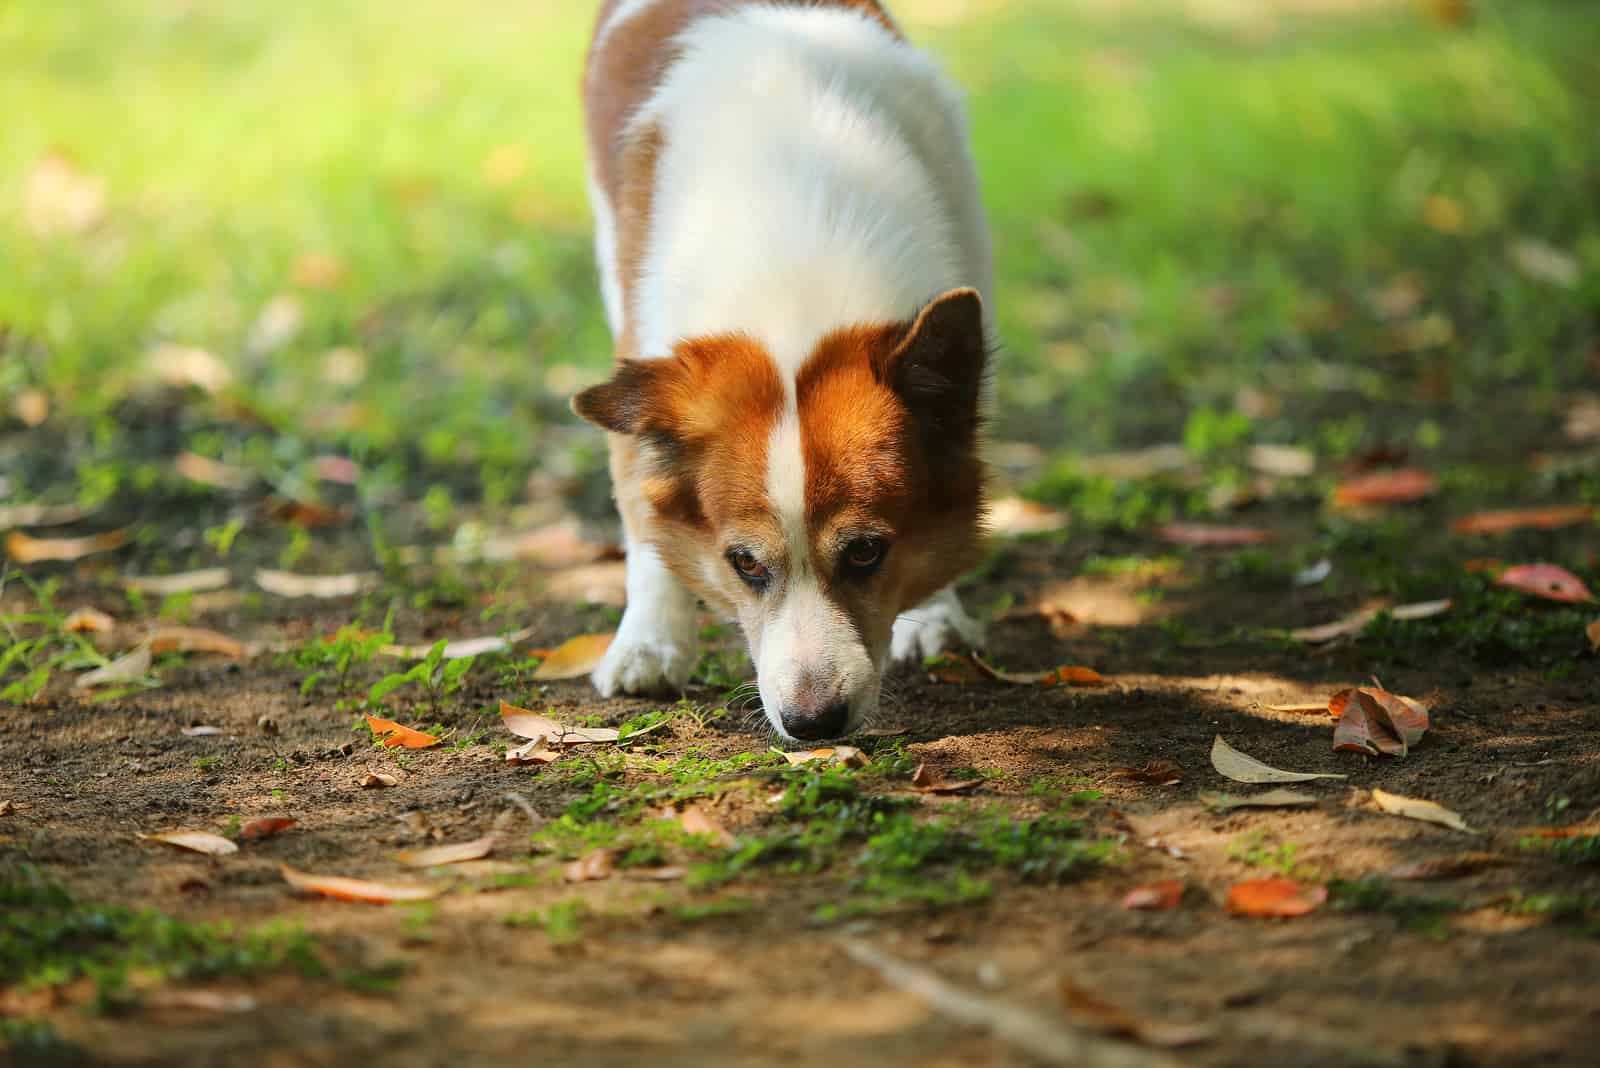 Thailändischer Bangkaew-Hundegeruch am Boden im Park